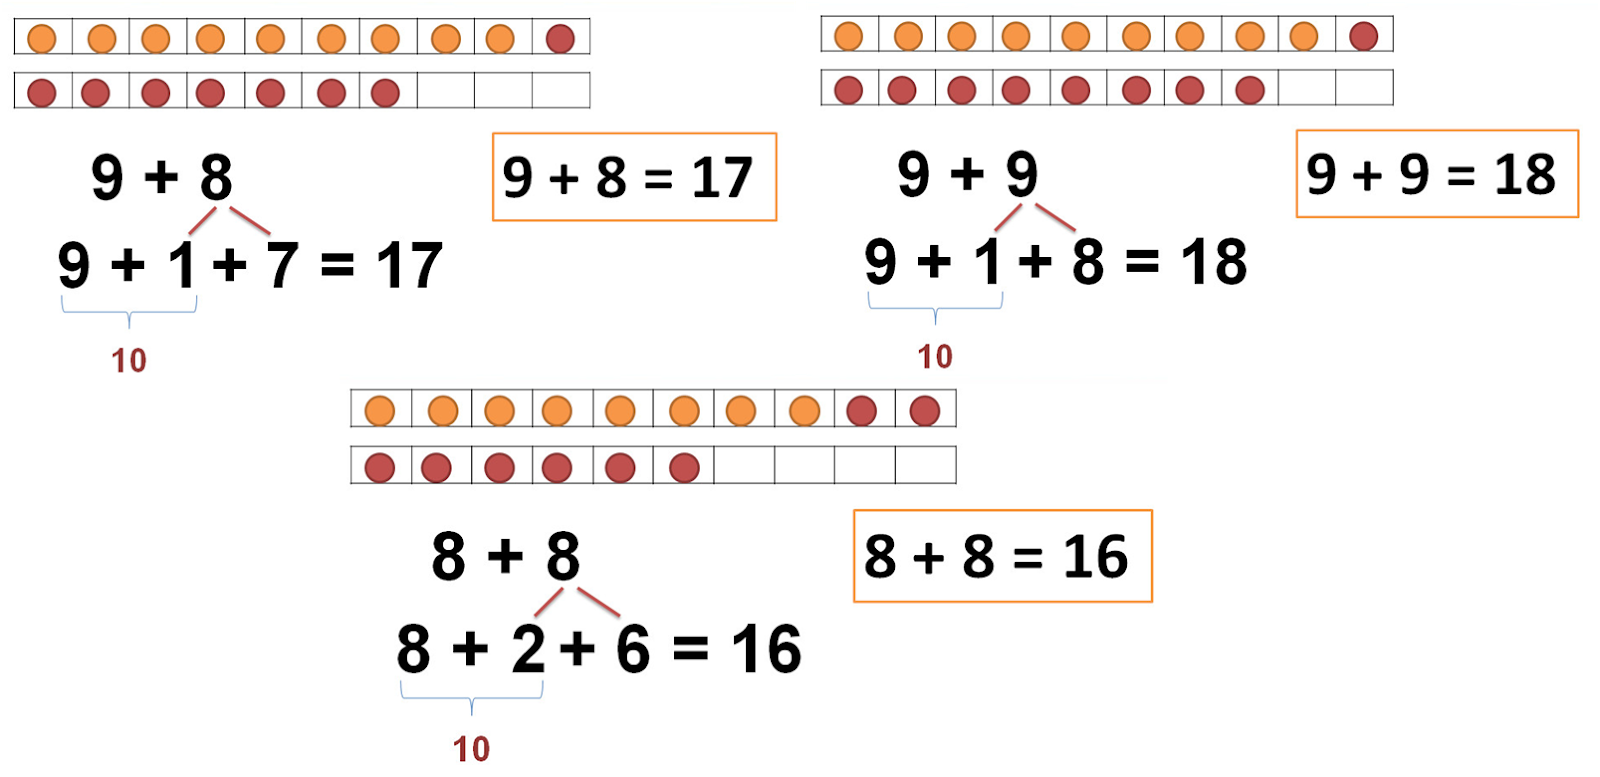 Таблица сложения через десяток 1. Таблица сложения однозначных чисел с переходом через десяток до 20. Сложение с переходом через десяток. Сложение однозначных чисел. Сложение однозначных чисел с переходом через десяток.